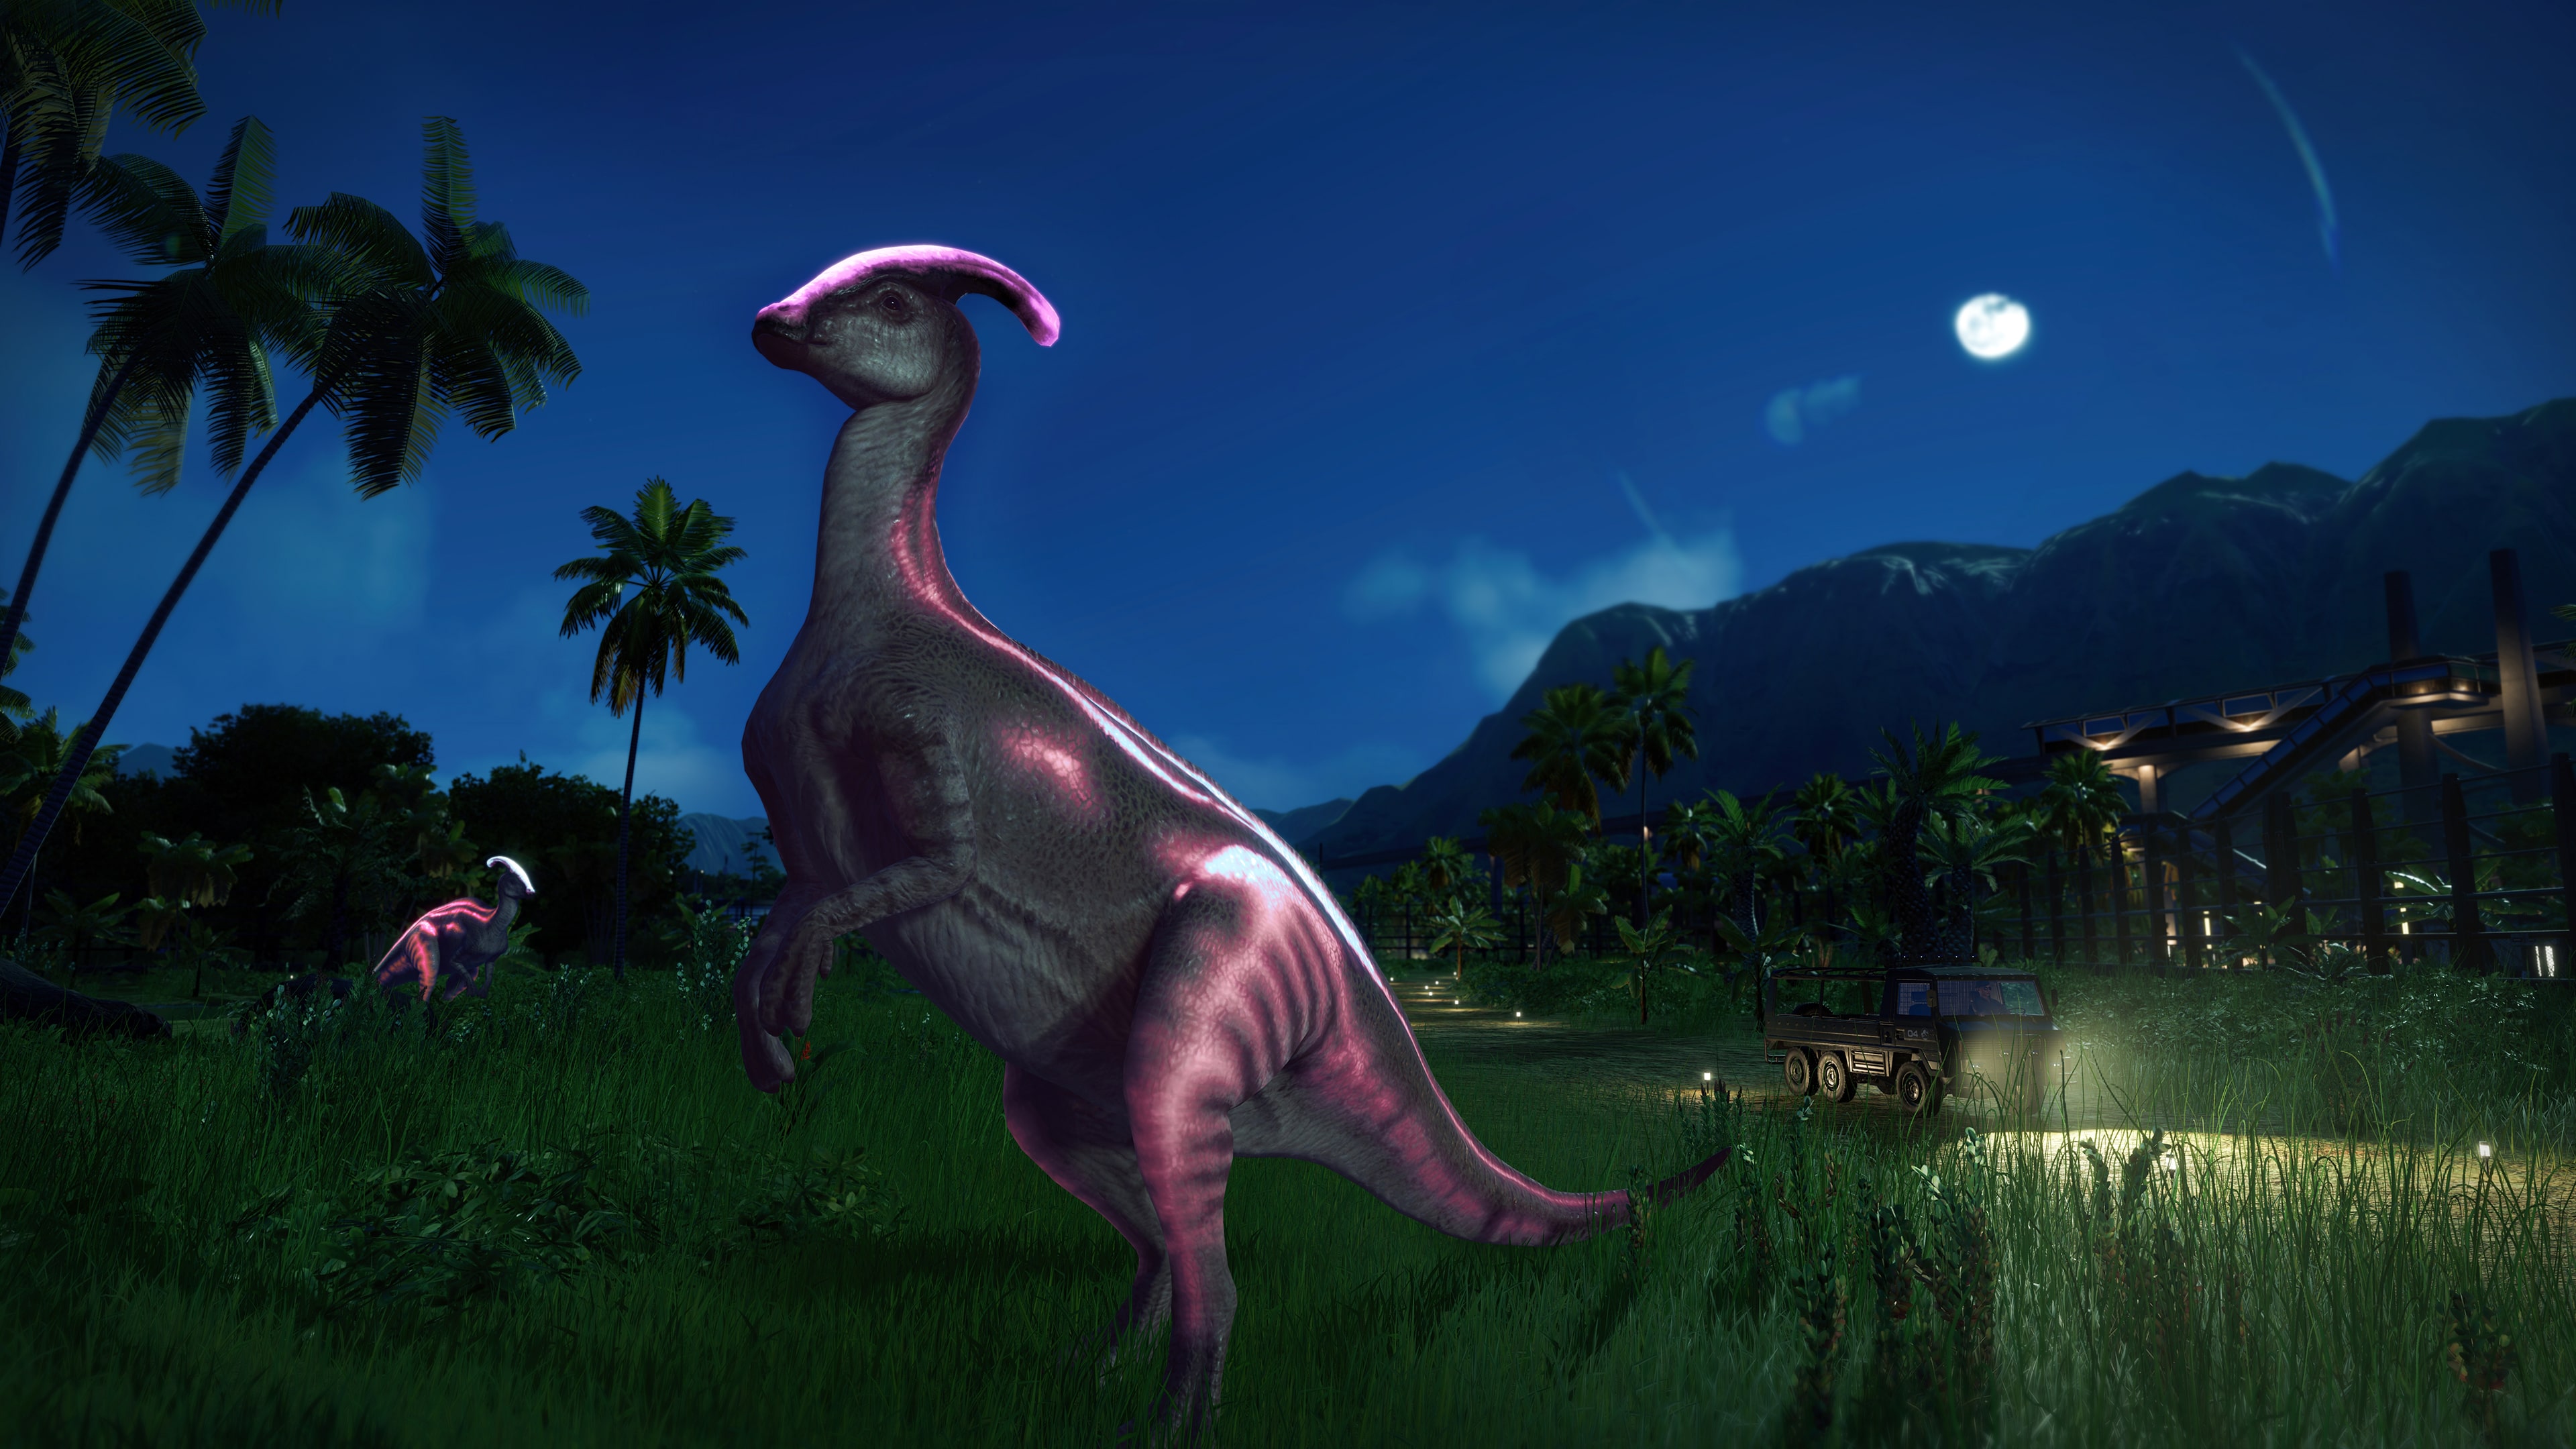 pacote-de-dinossauros-jurassic-world-evolution-2-acampamento-jur-ssico